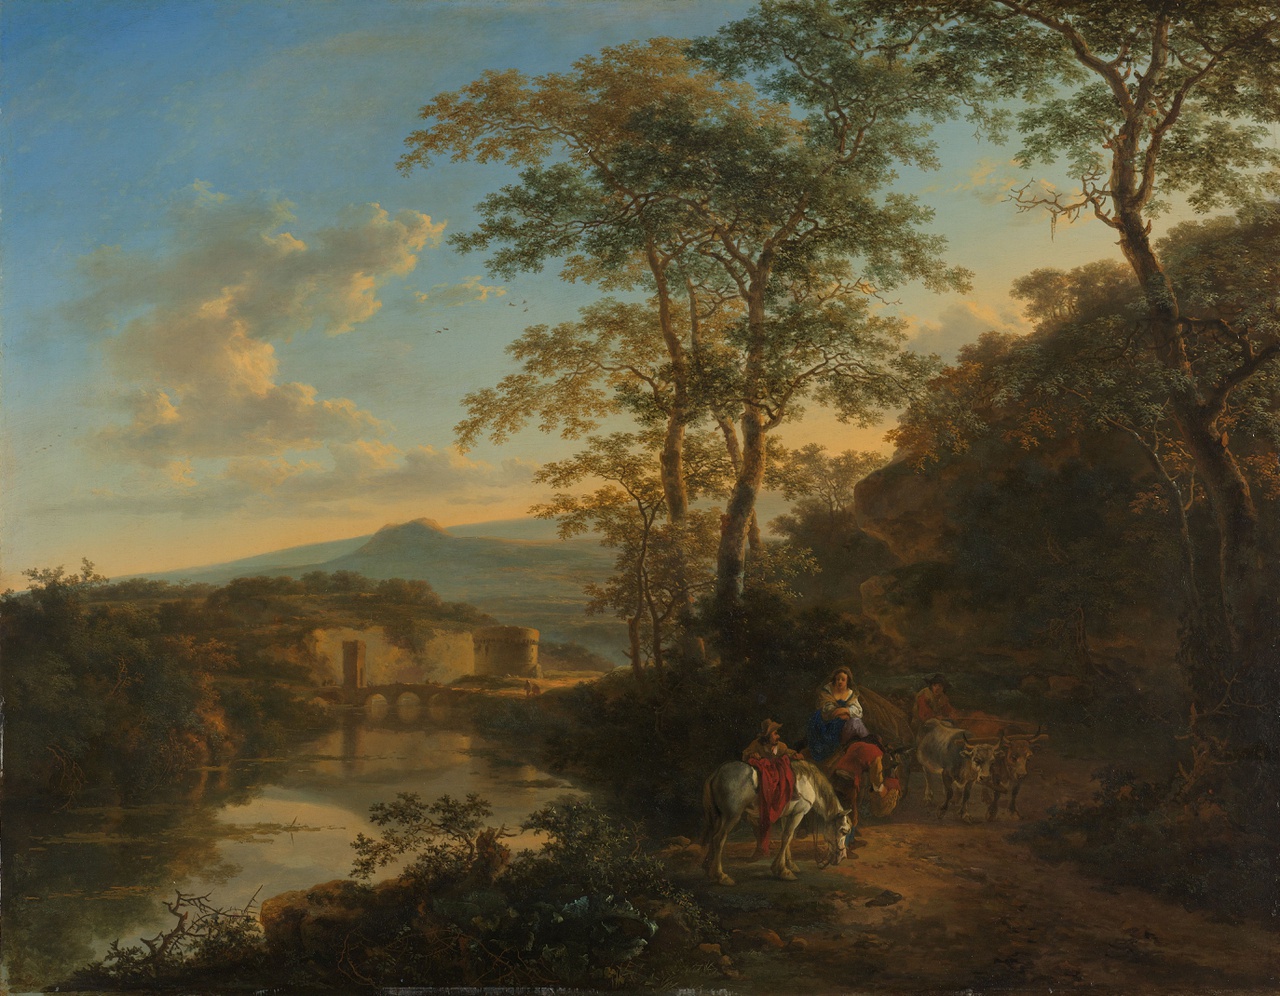 6/6 - Jan Both, Italiaans landschap met de Ponte Lucano over de Aniene rivier, ca. 1650-52. Olieverf op doek. Rijksmuseum, Amsterdam, inv.nr. SK-A-51